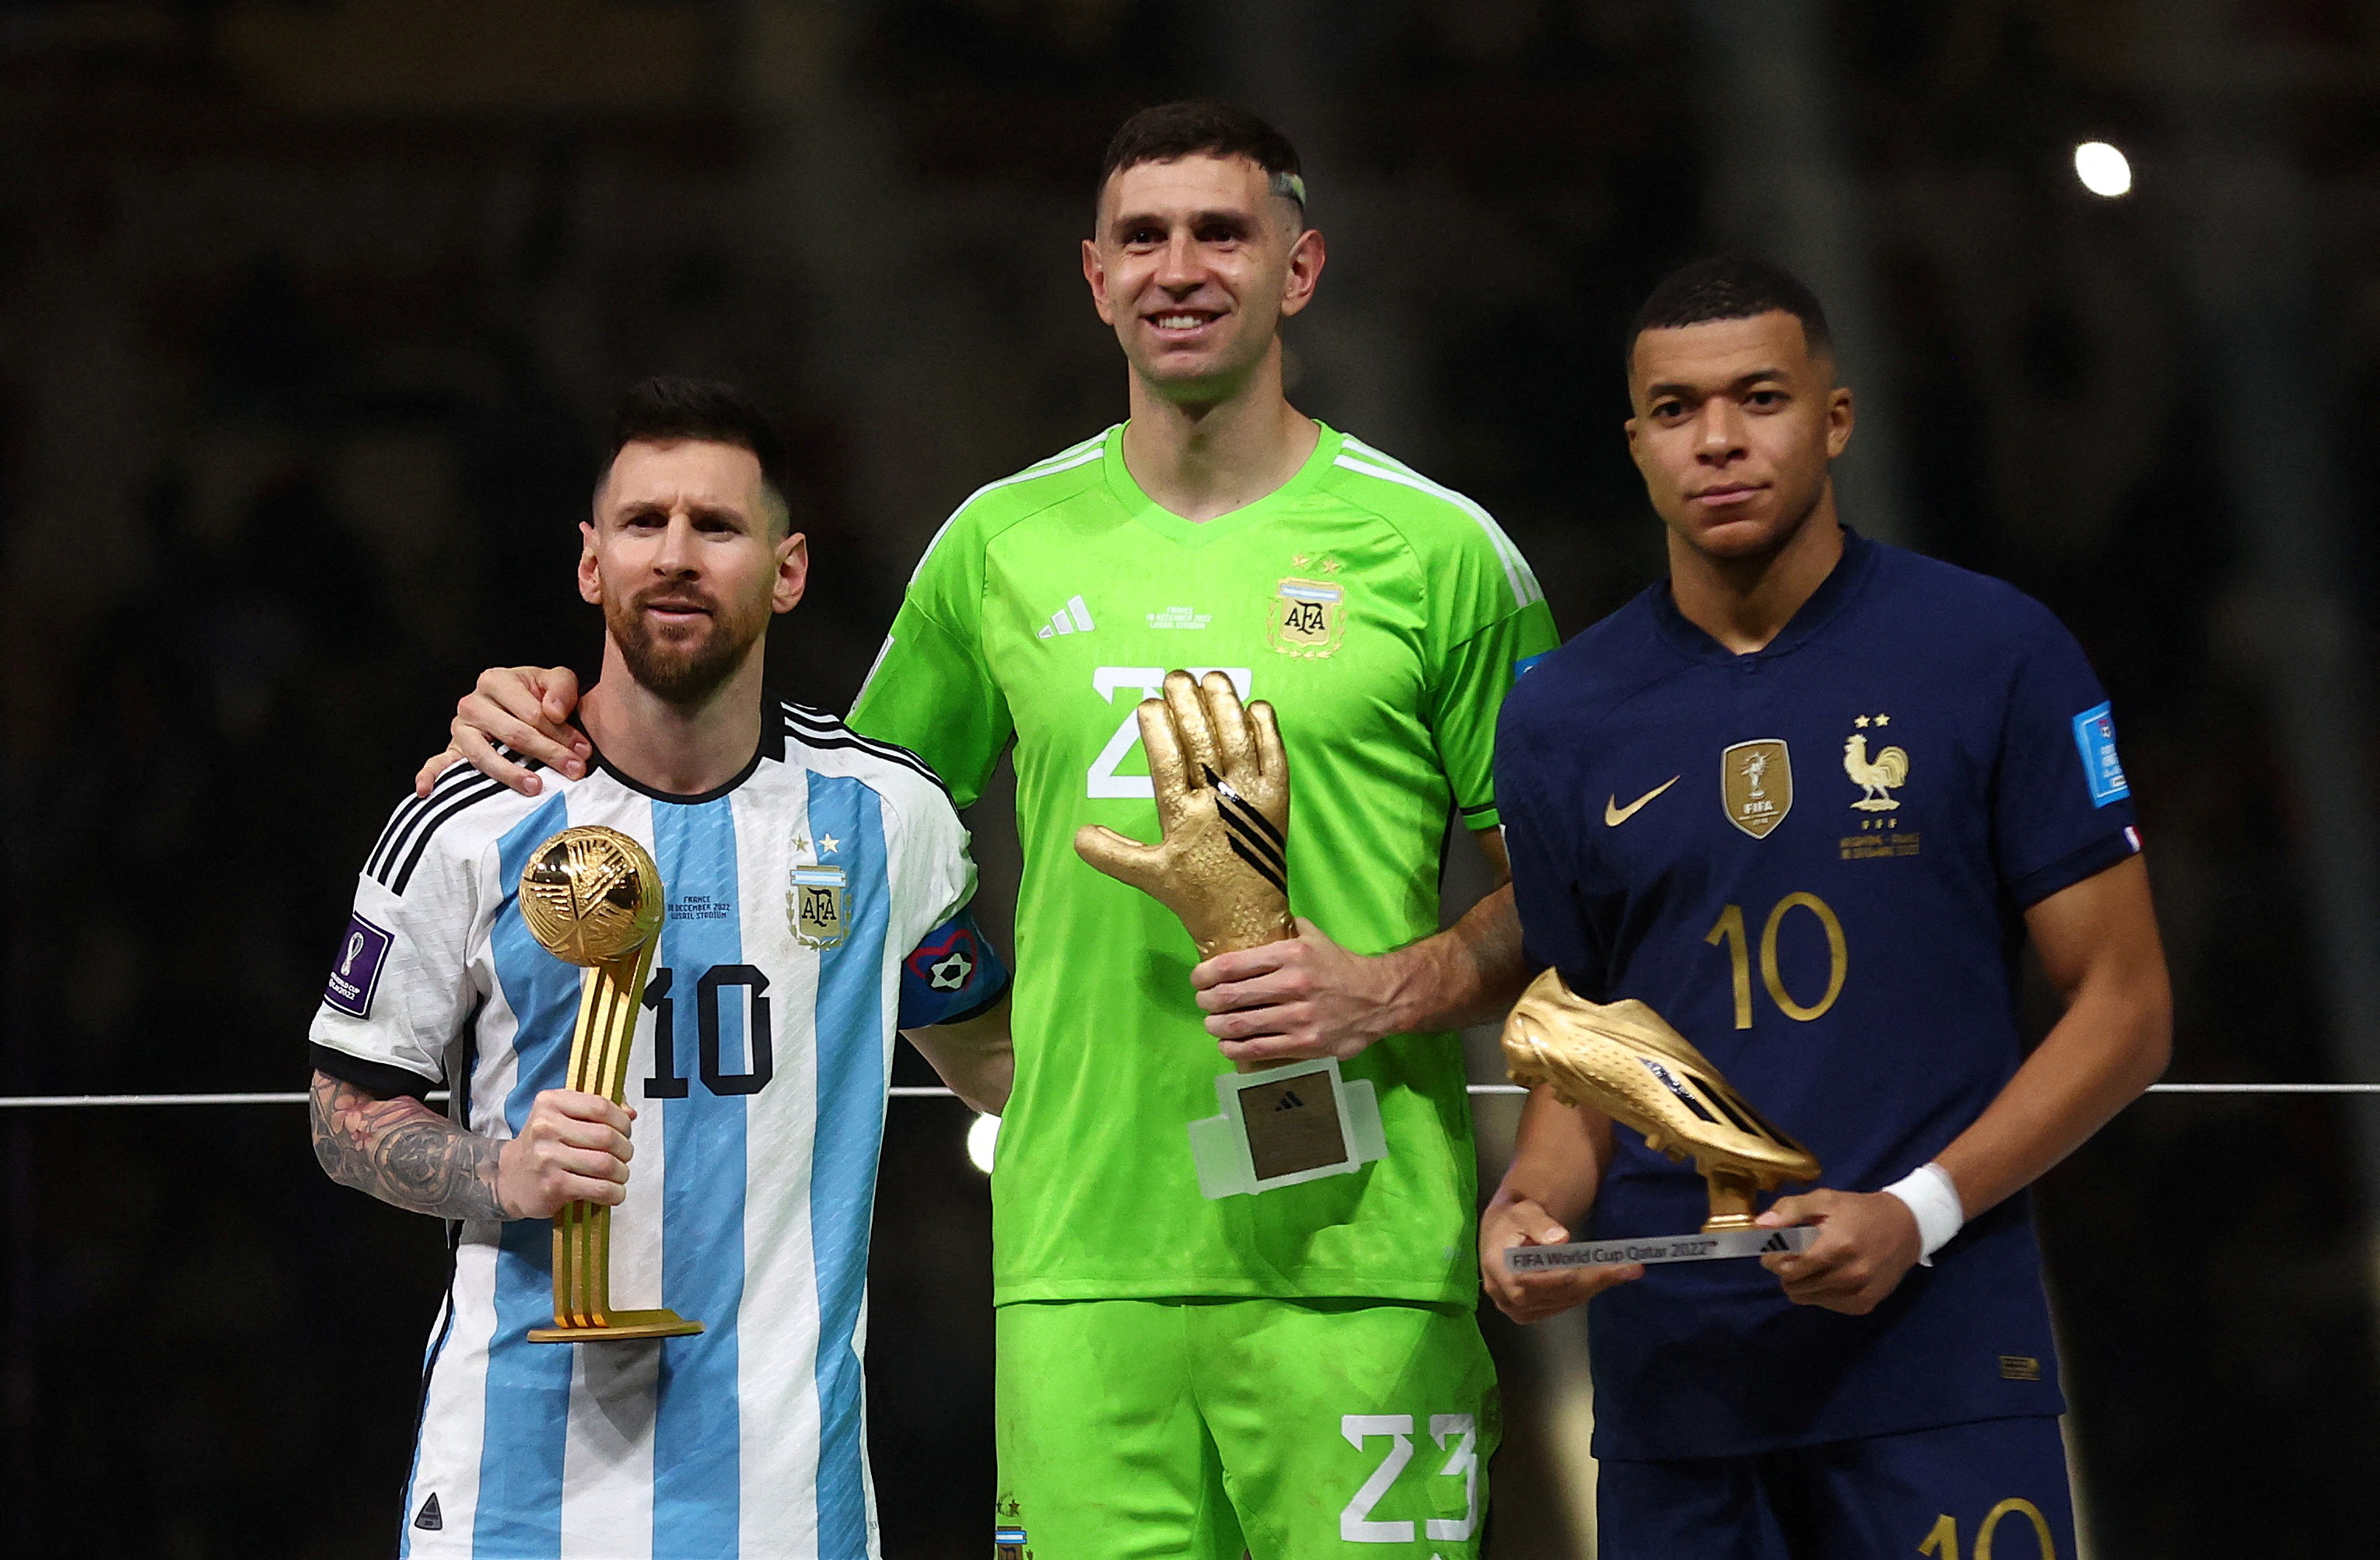 Lionel Messi, Dibu Martínez y Kylian Mbappé, que mostró hidalguía en la entrega de premios tras el triunfo argentino en la final del Mundial Qatar 2022 (REUTERS/Carl Recine/File Photo)